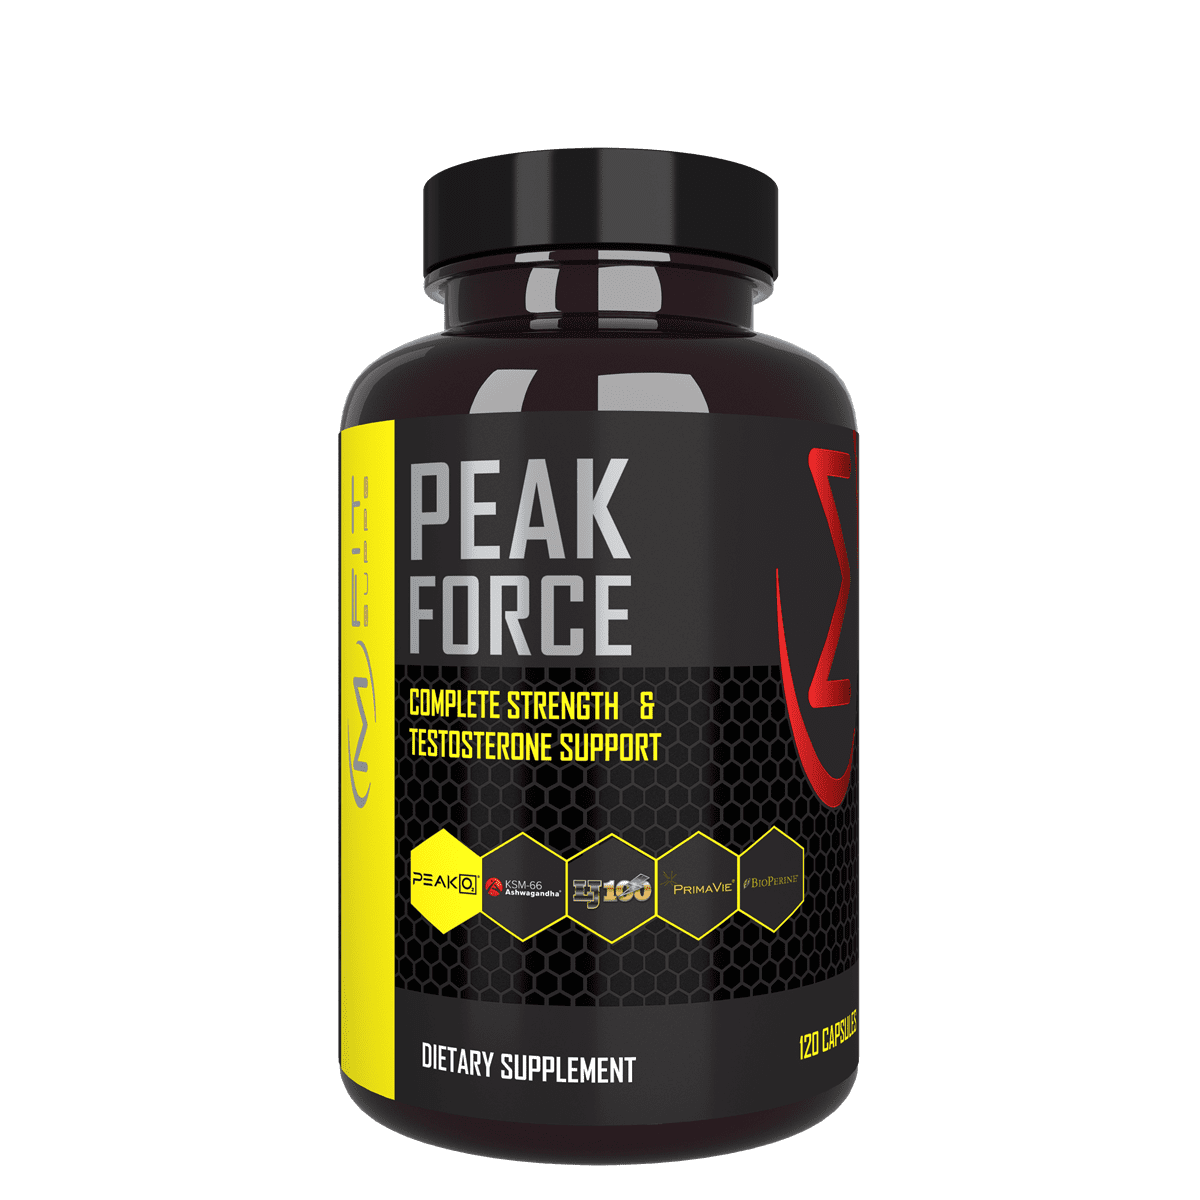 Peak Force